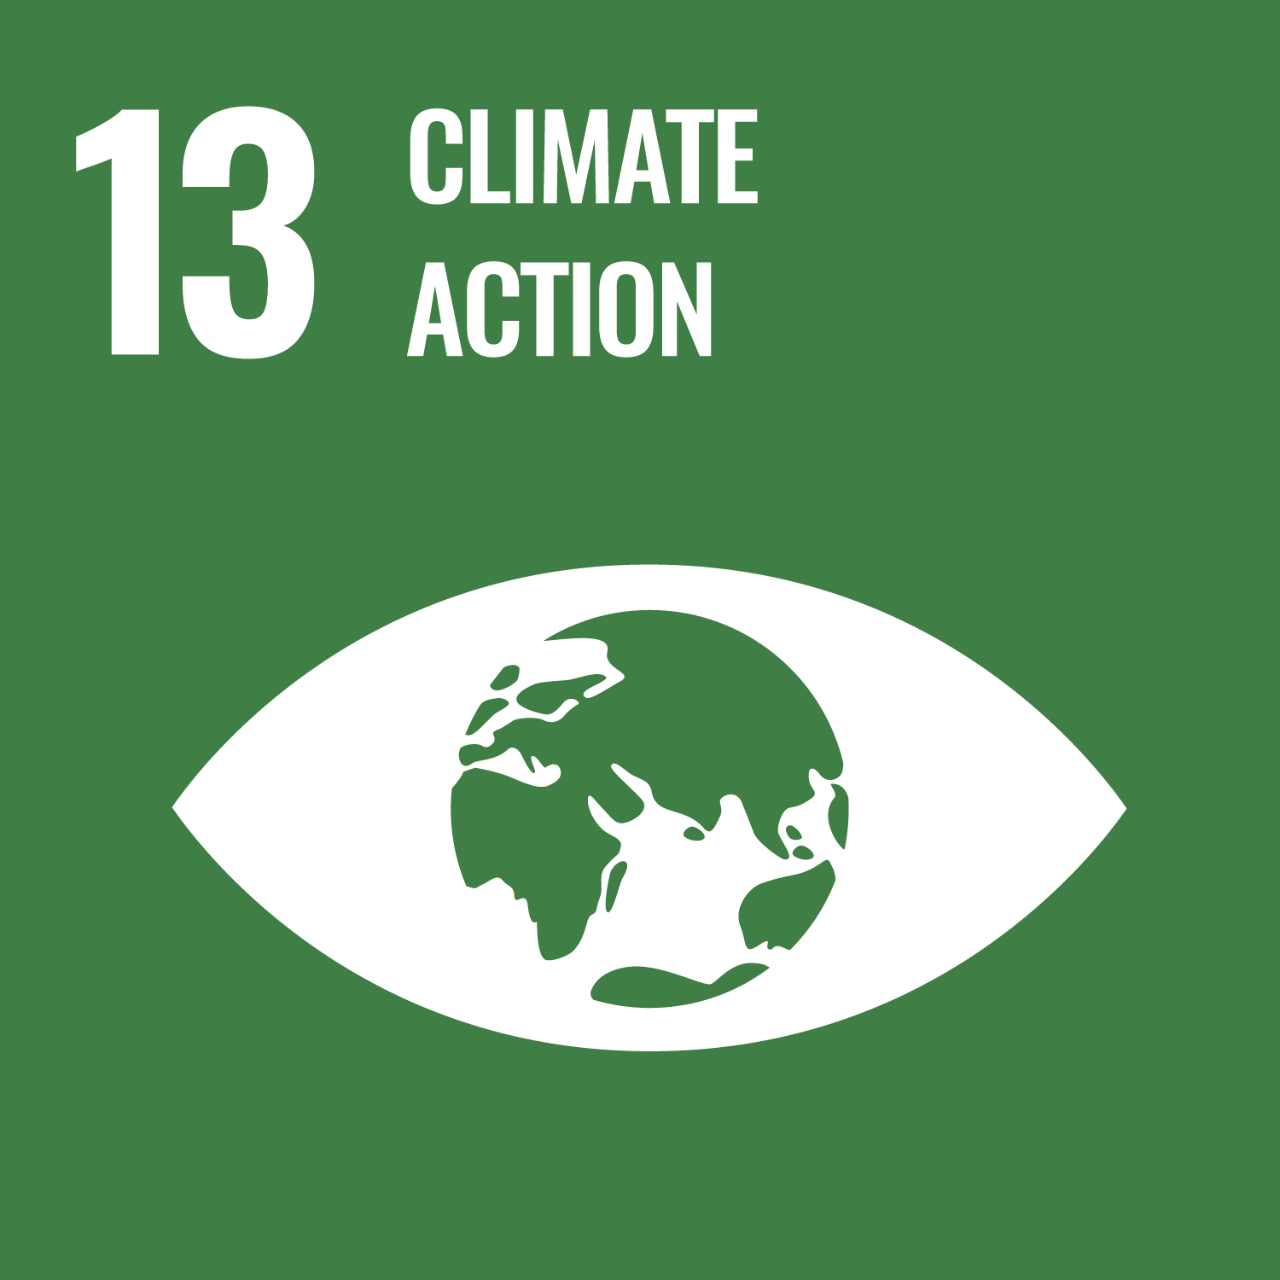 Sürdürülebilir gelişim hedefi 13, iklim değişikliği ve etkileri ile savaşma konusunda acil aksiyon almayı gerektirmektedir.